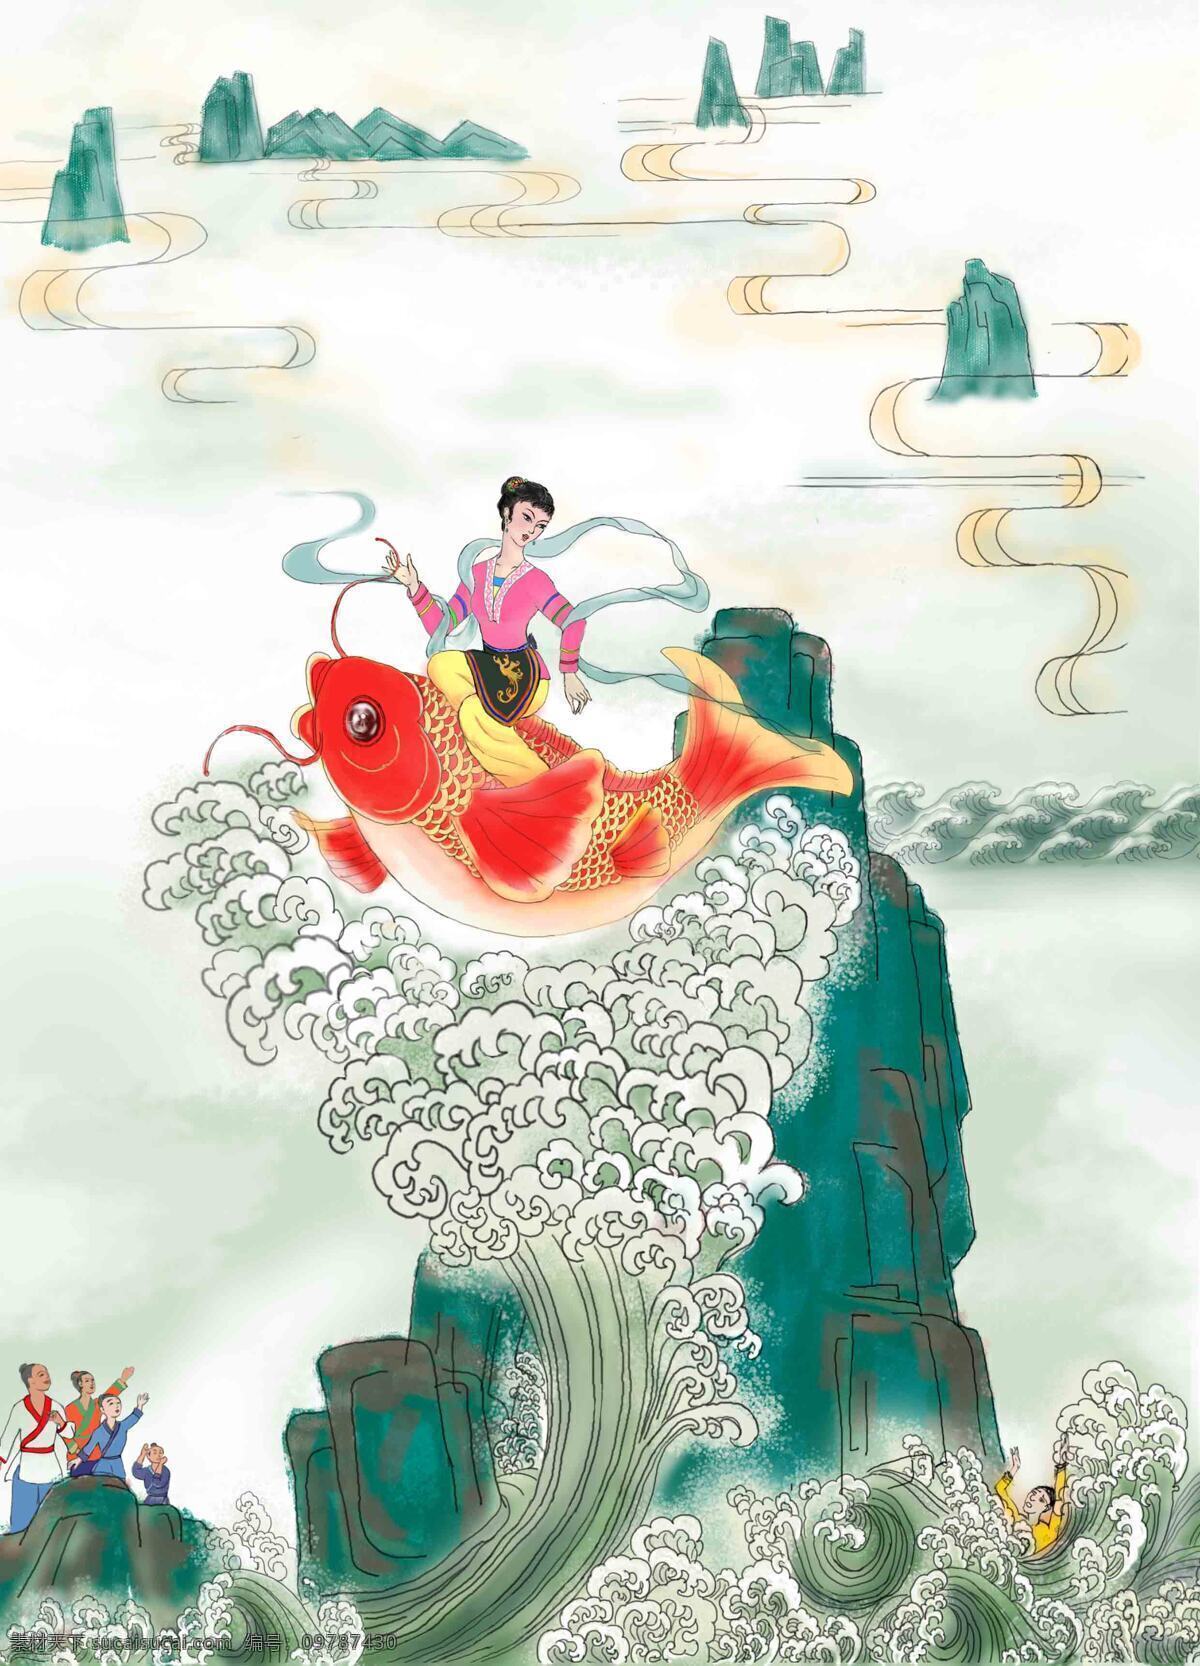 仙女 造福 壁纸 插画 平面设计 神话 金鲤 文化艺术